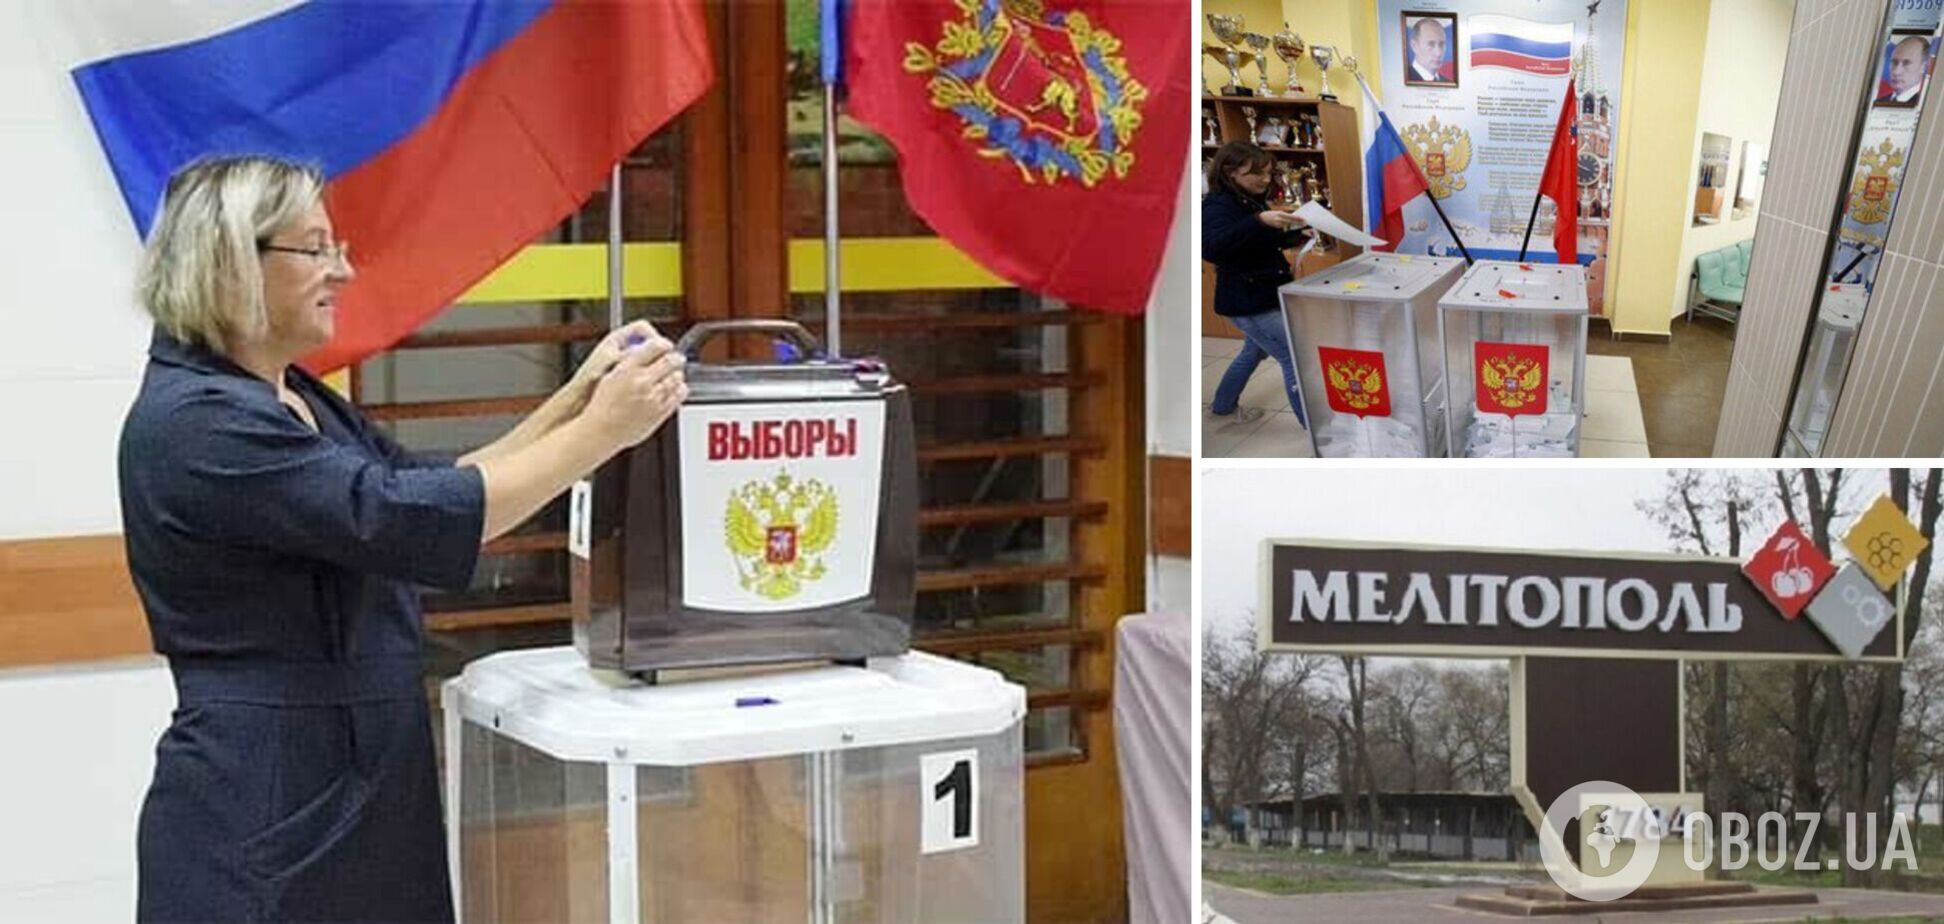 Голосовать можно и с украинским паспортом, и с российским: в Мелитополе псевдовыборы дошли до абсурда